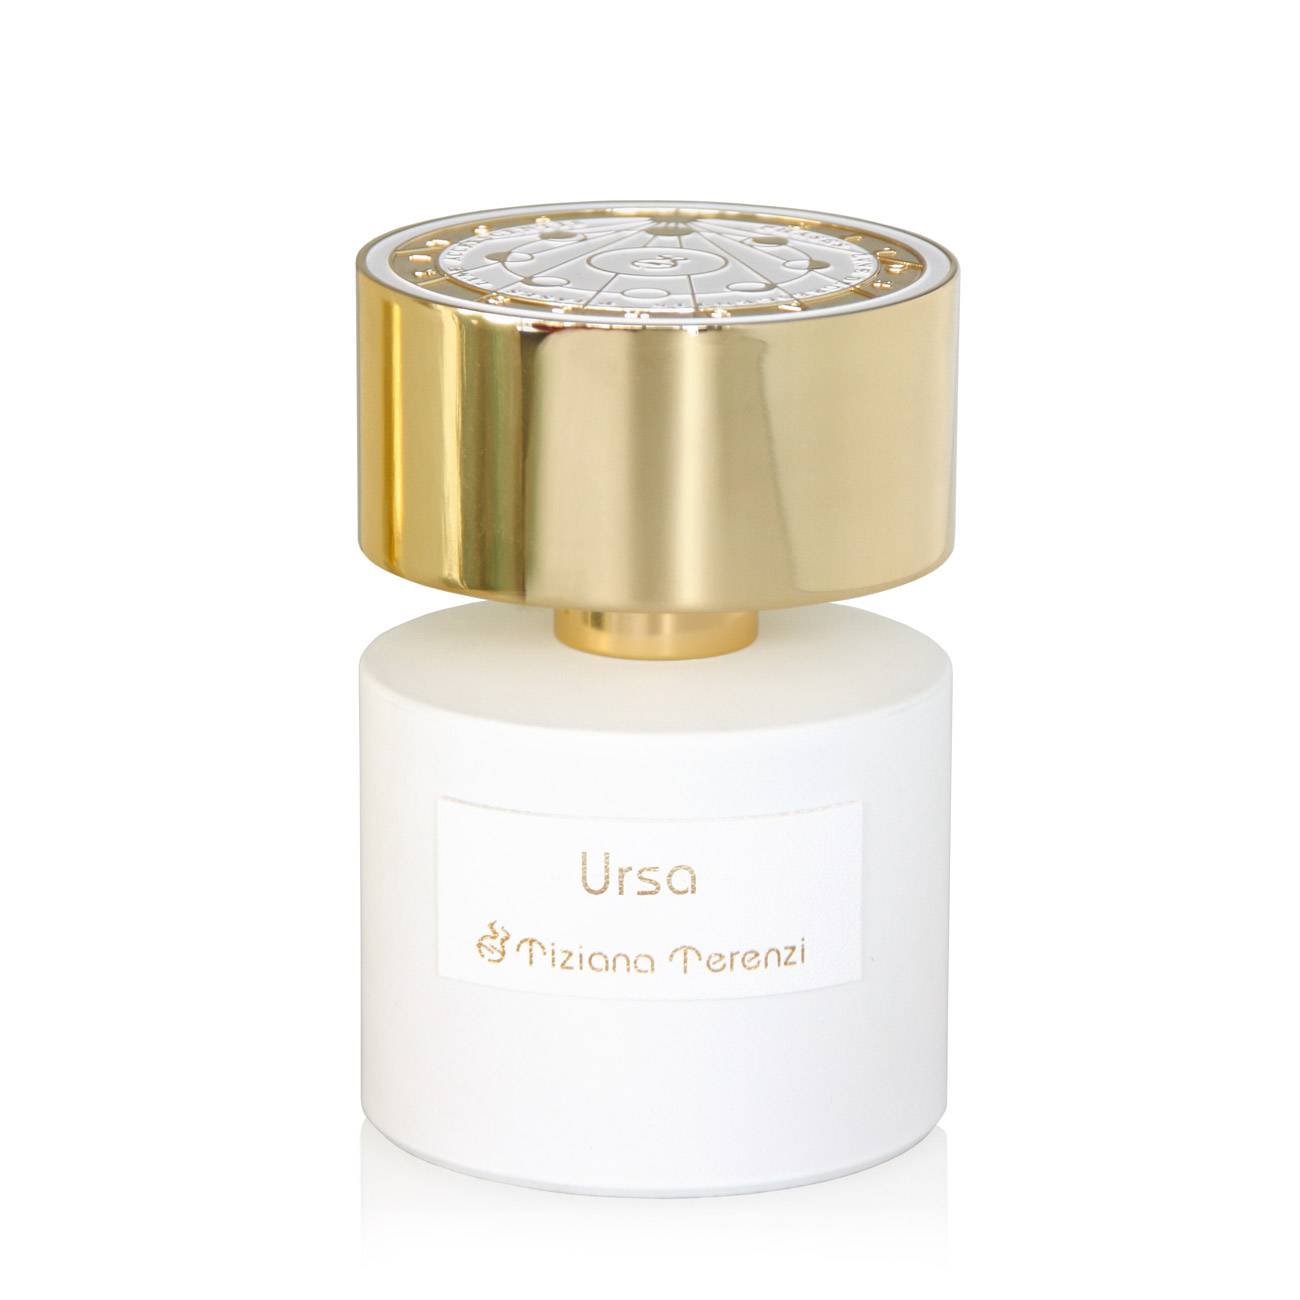 Parfum de niche Tiziana Terenzi URSA 100ml cu comanda online